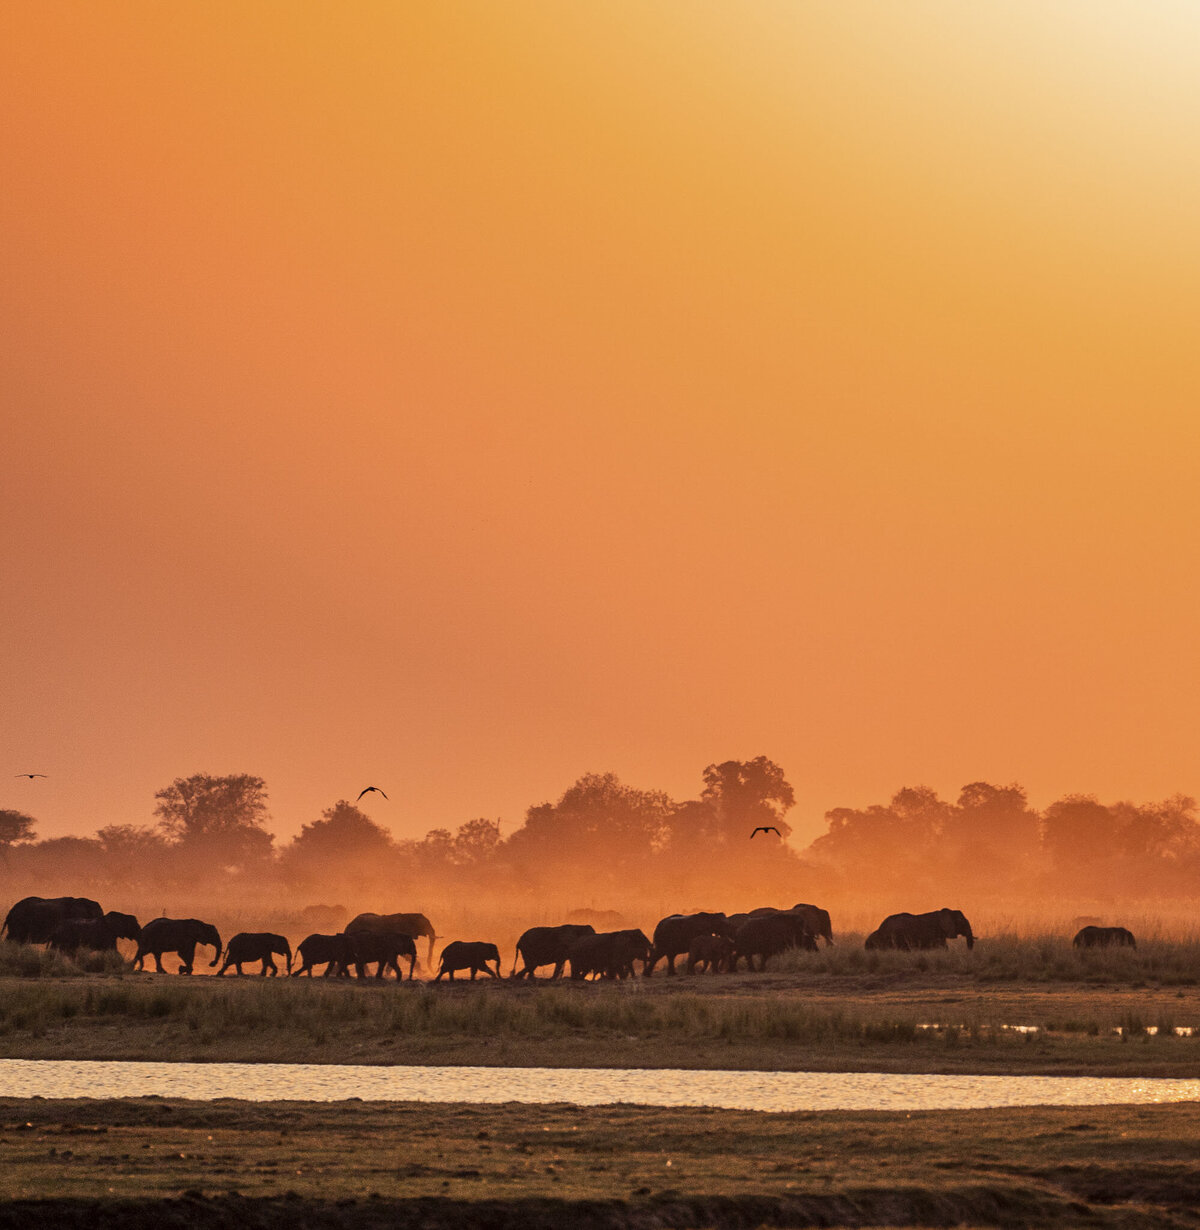 Chobe River Sunset Safari Chobe Game Lodge Botswana Elephants_By Stephanie Vermillion